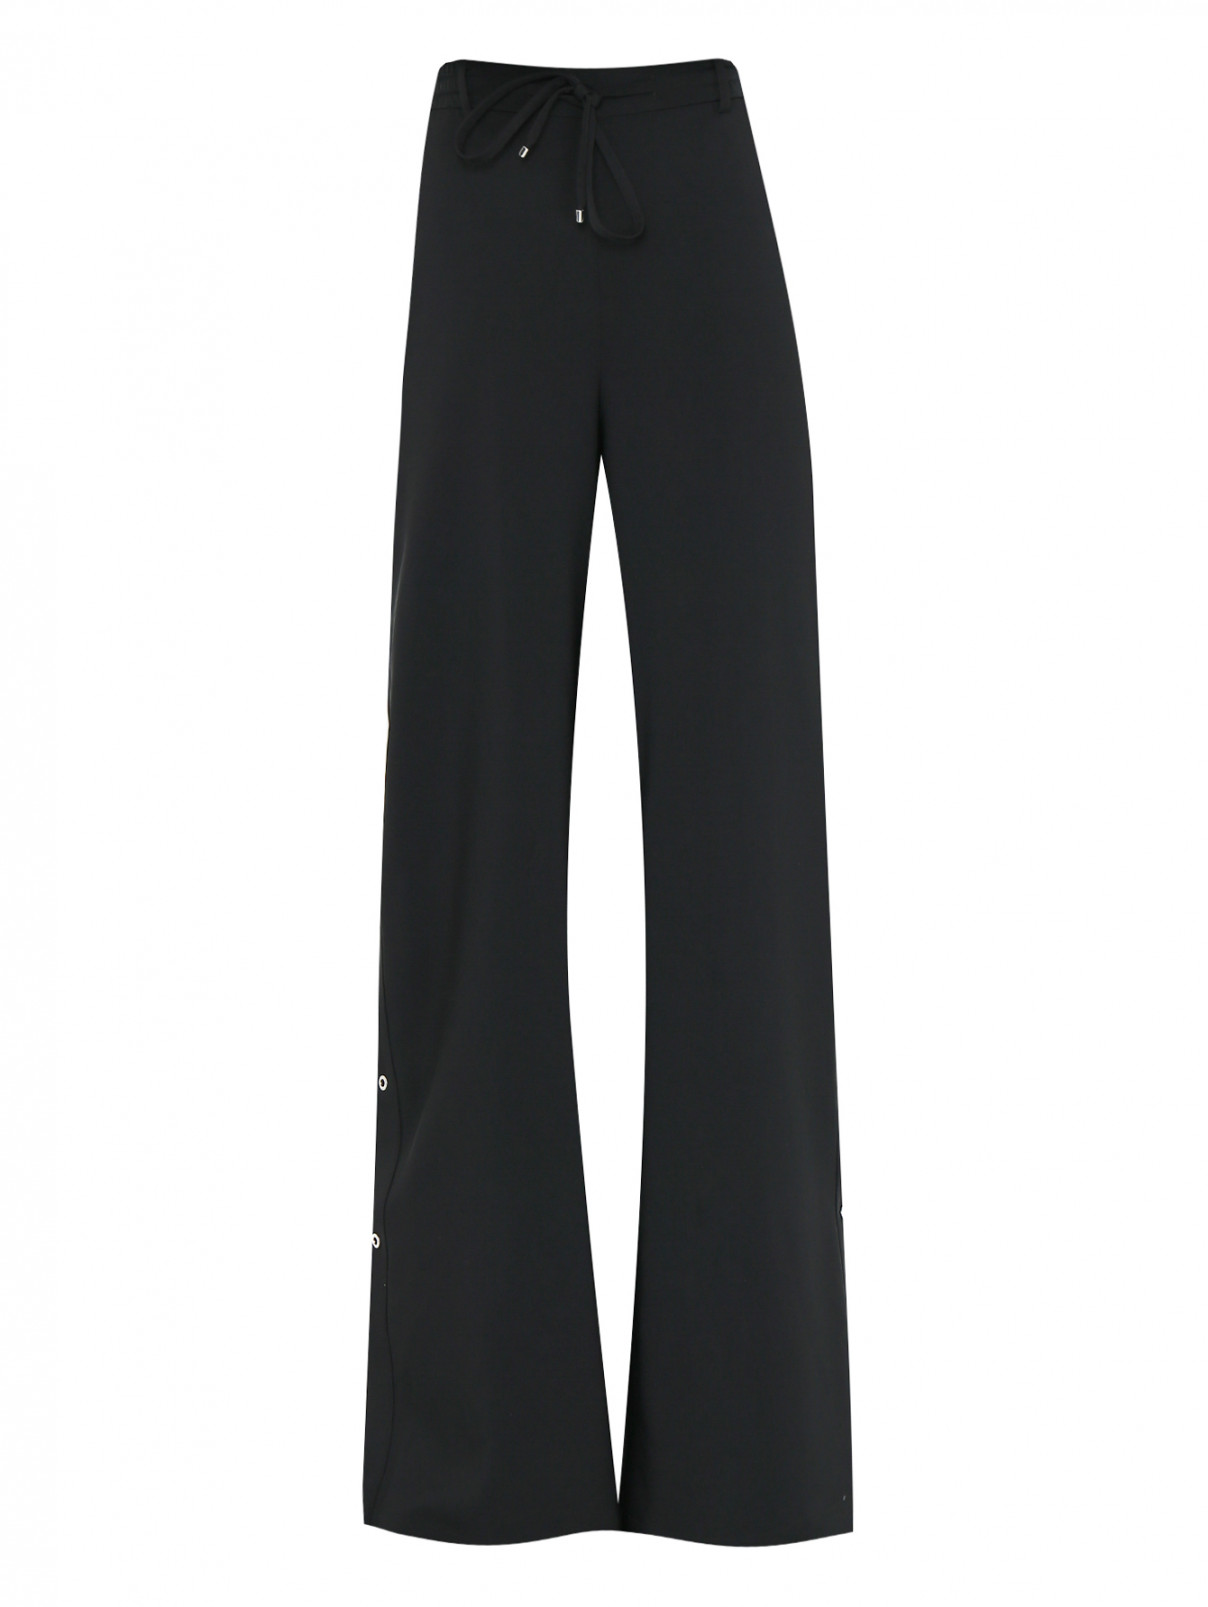 Широкие брюки на резинке Zuhair Murad  –  Общий вид  – Цвет:  Черный